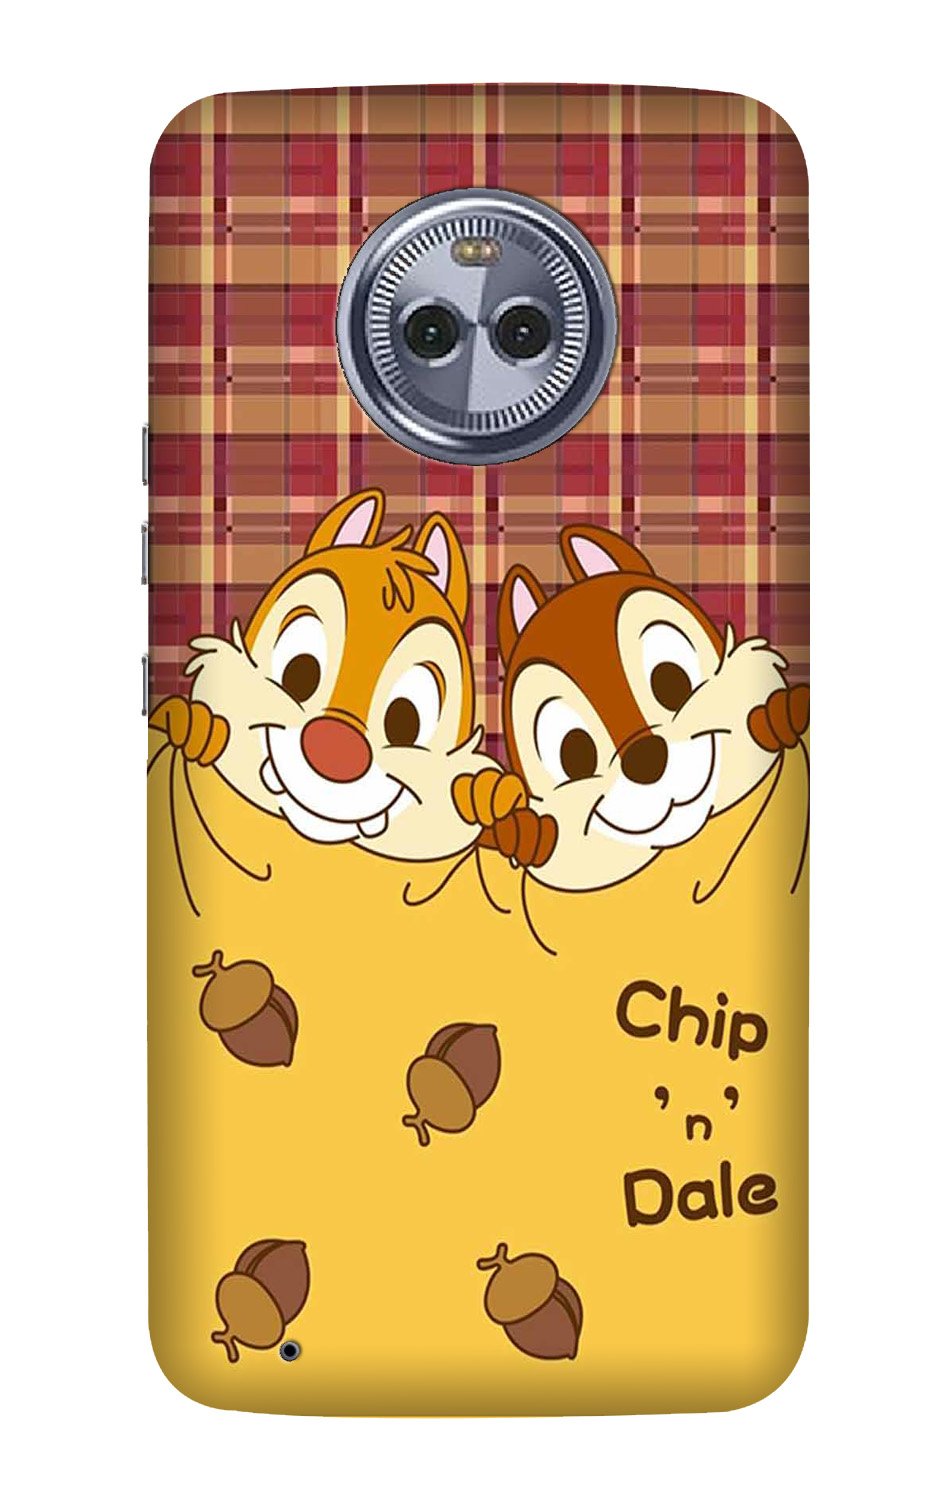 Chip n Dale Mobile Back Case for Moto X4 (Design - 342)